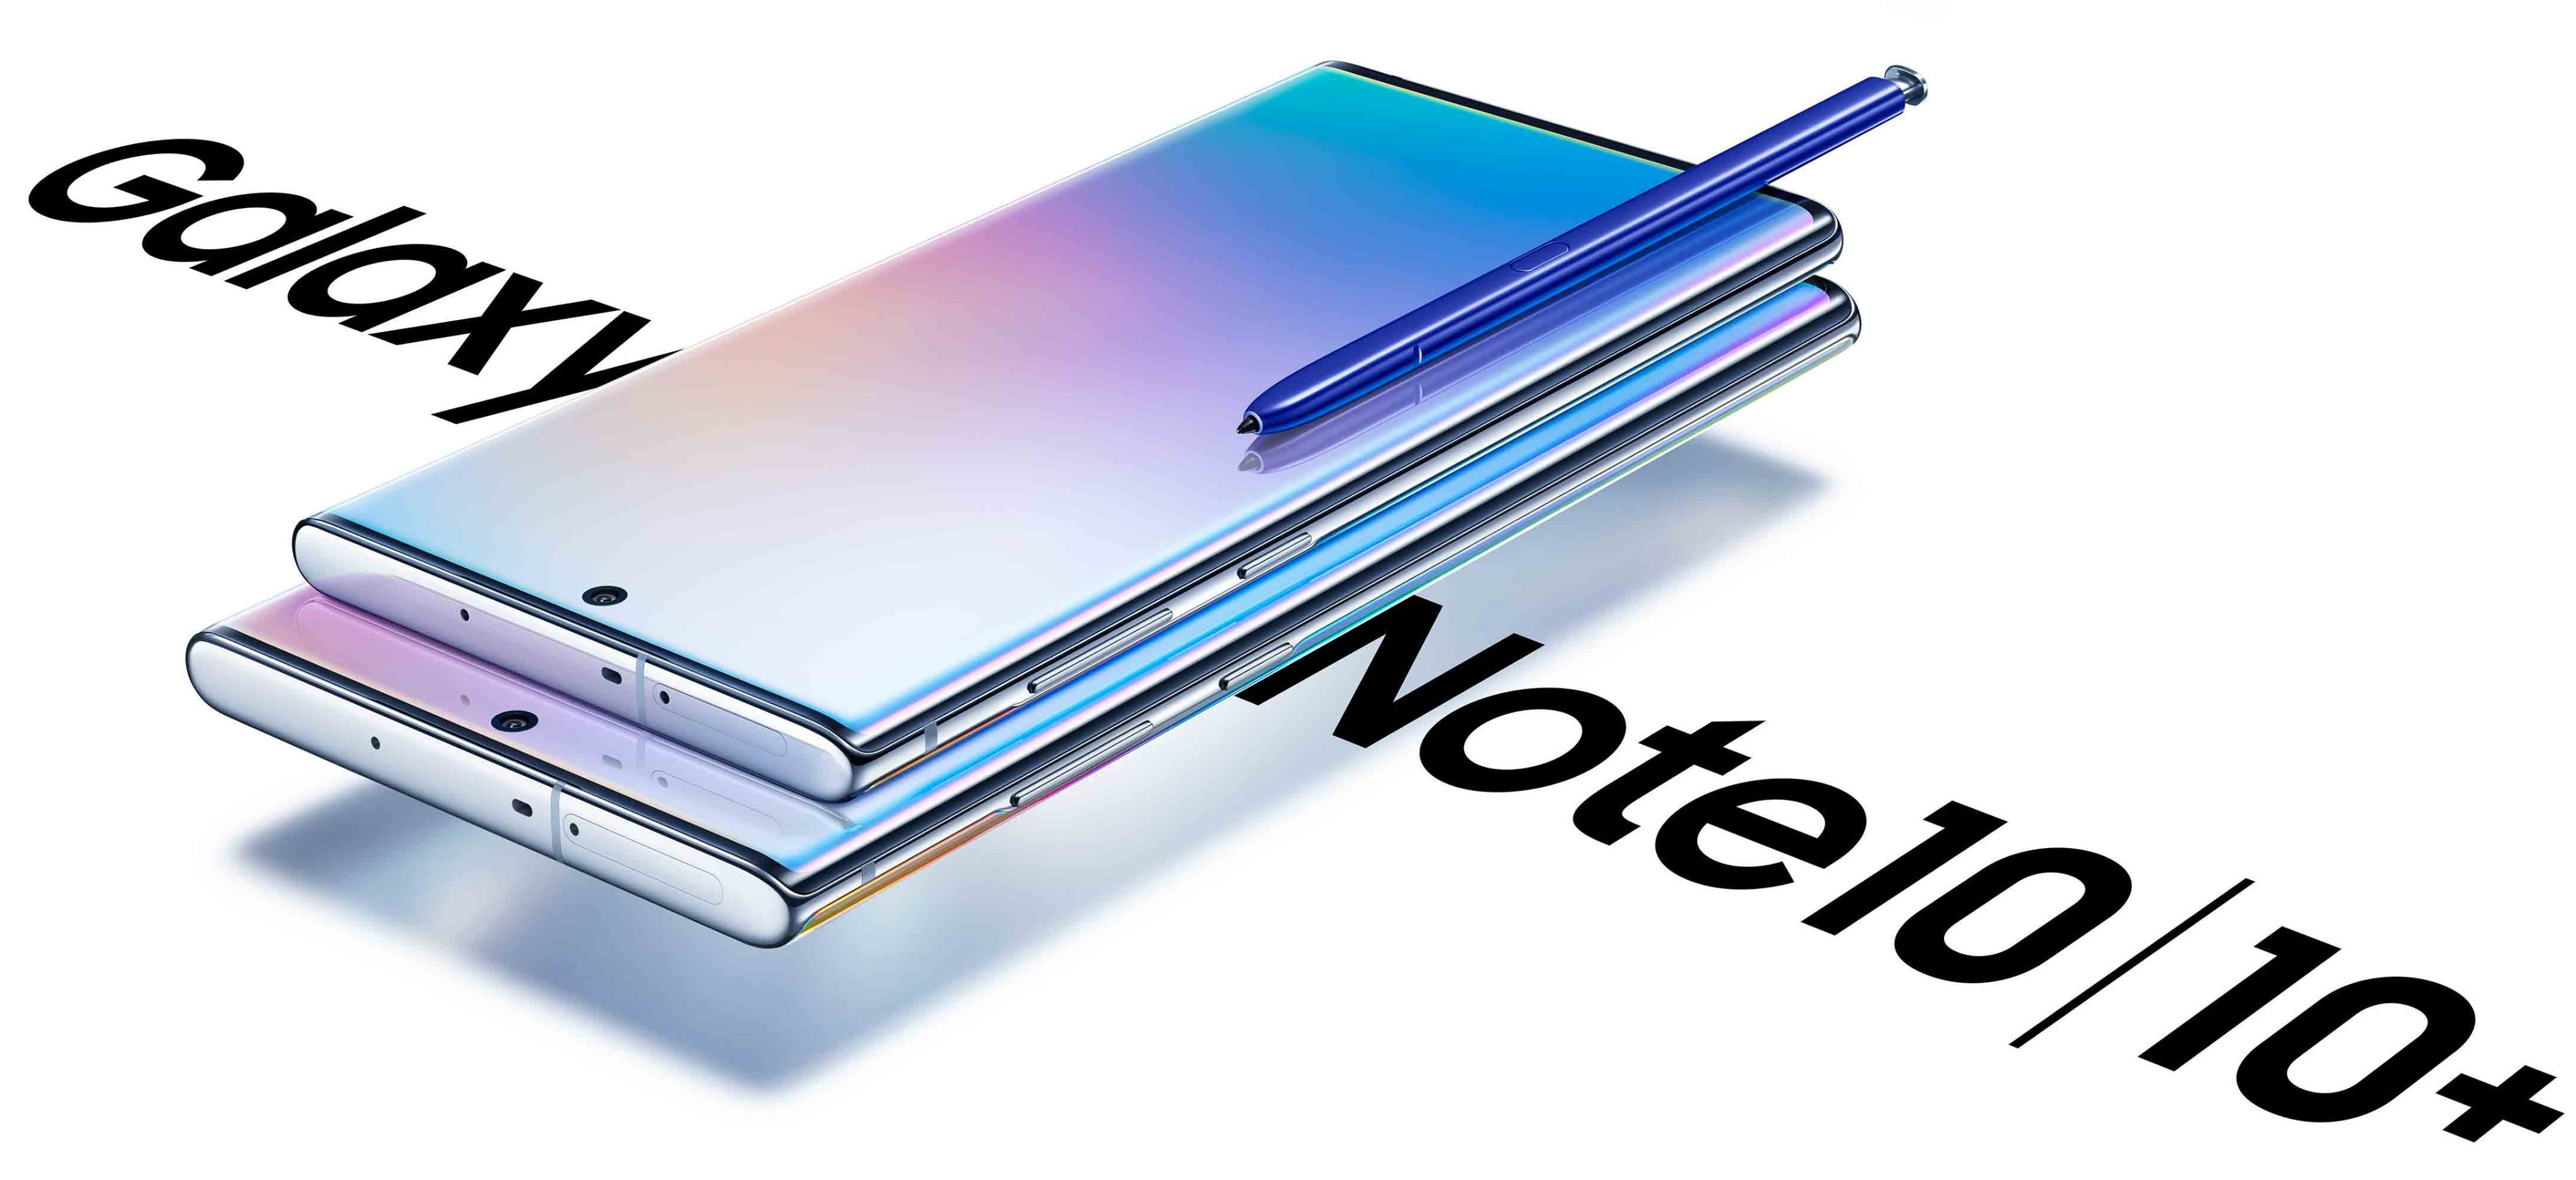 Allt du behöver veta om Samsung Galaxy Note 10